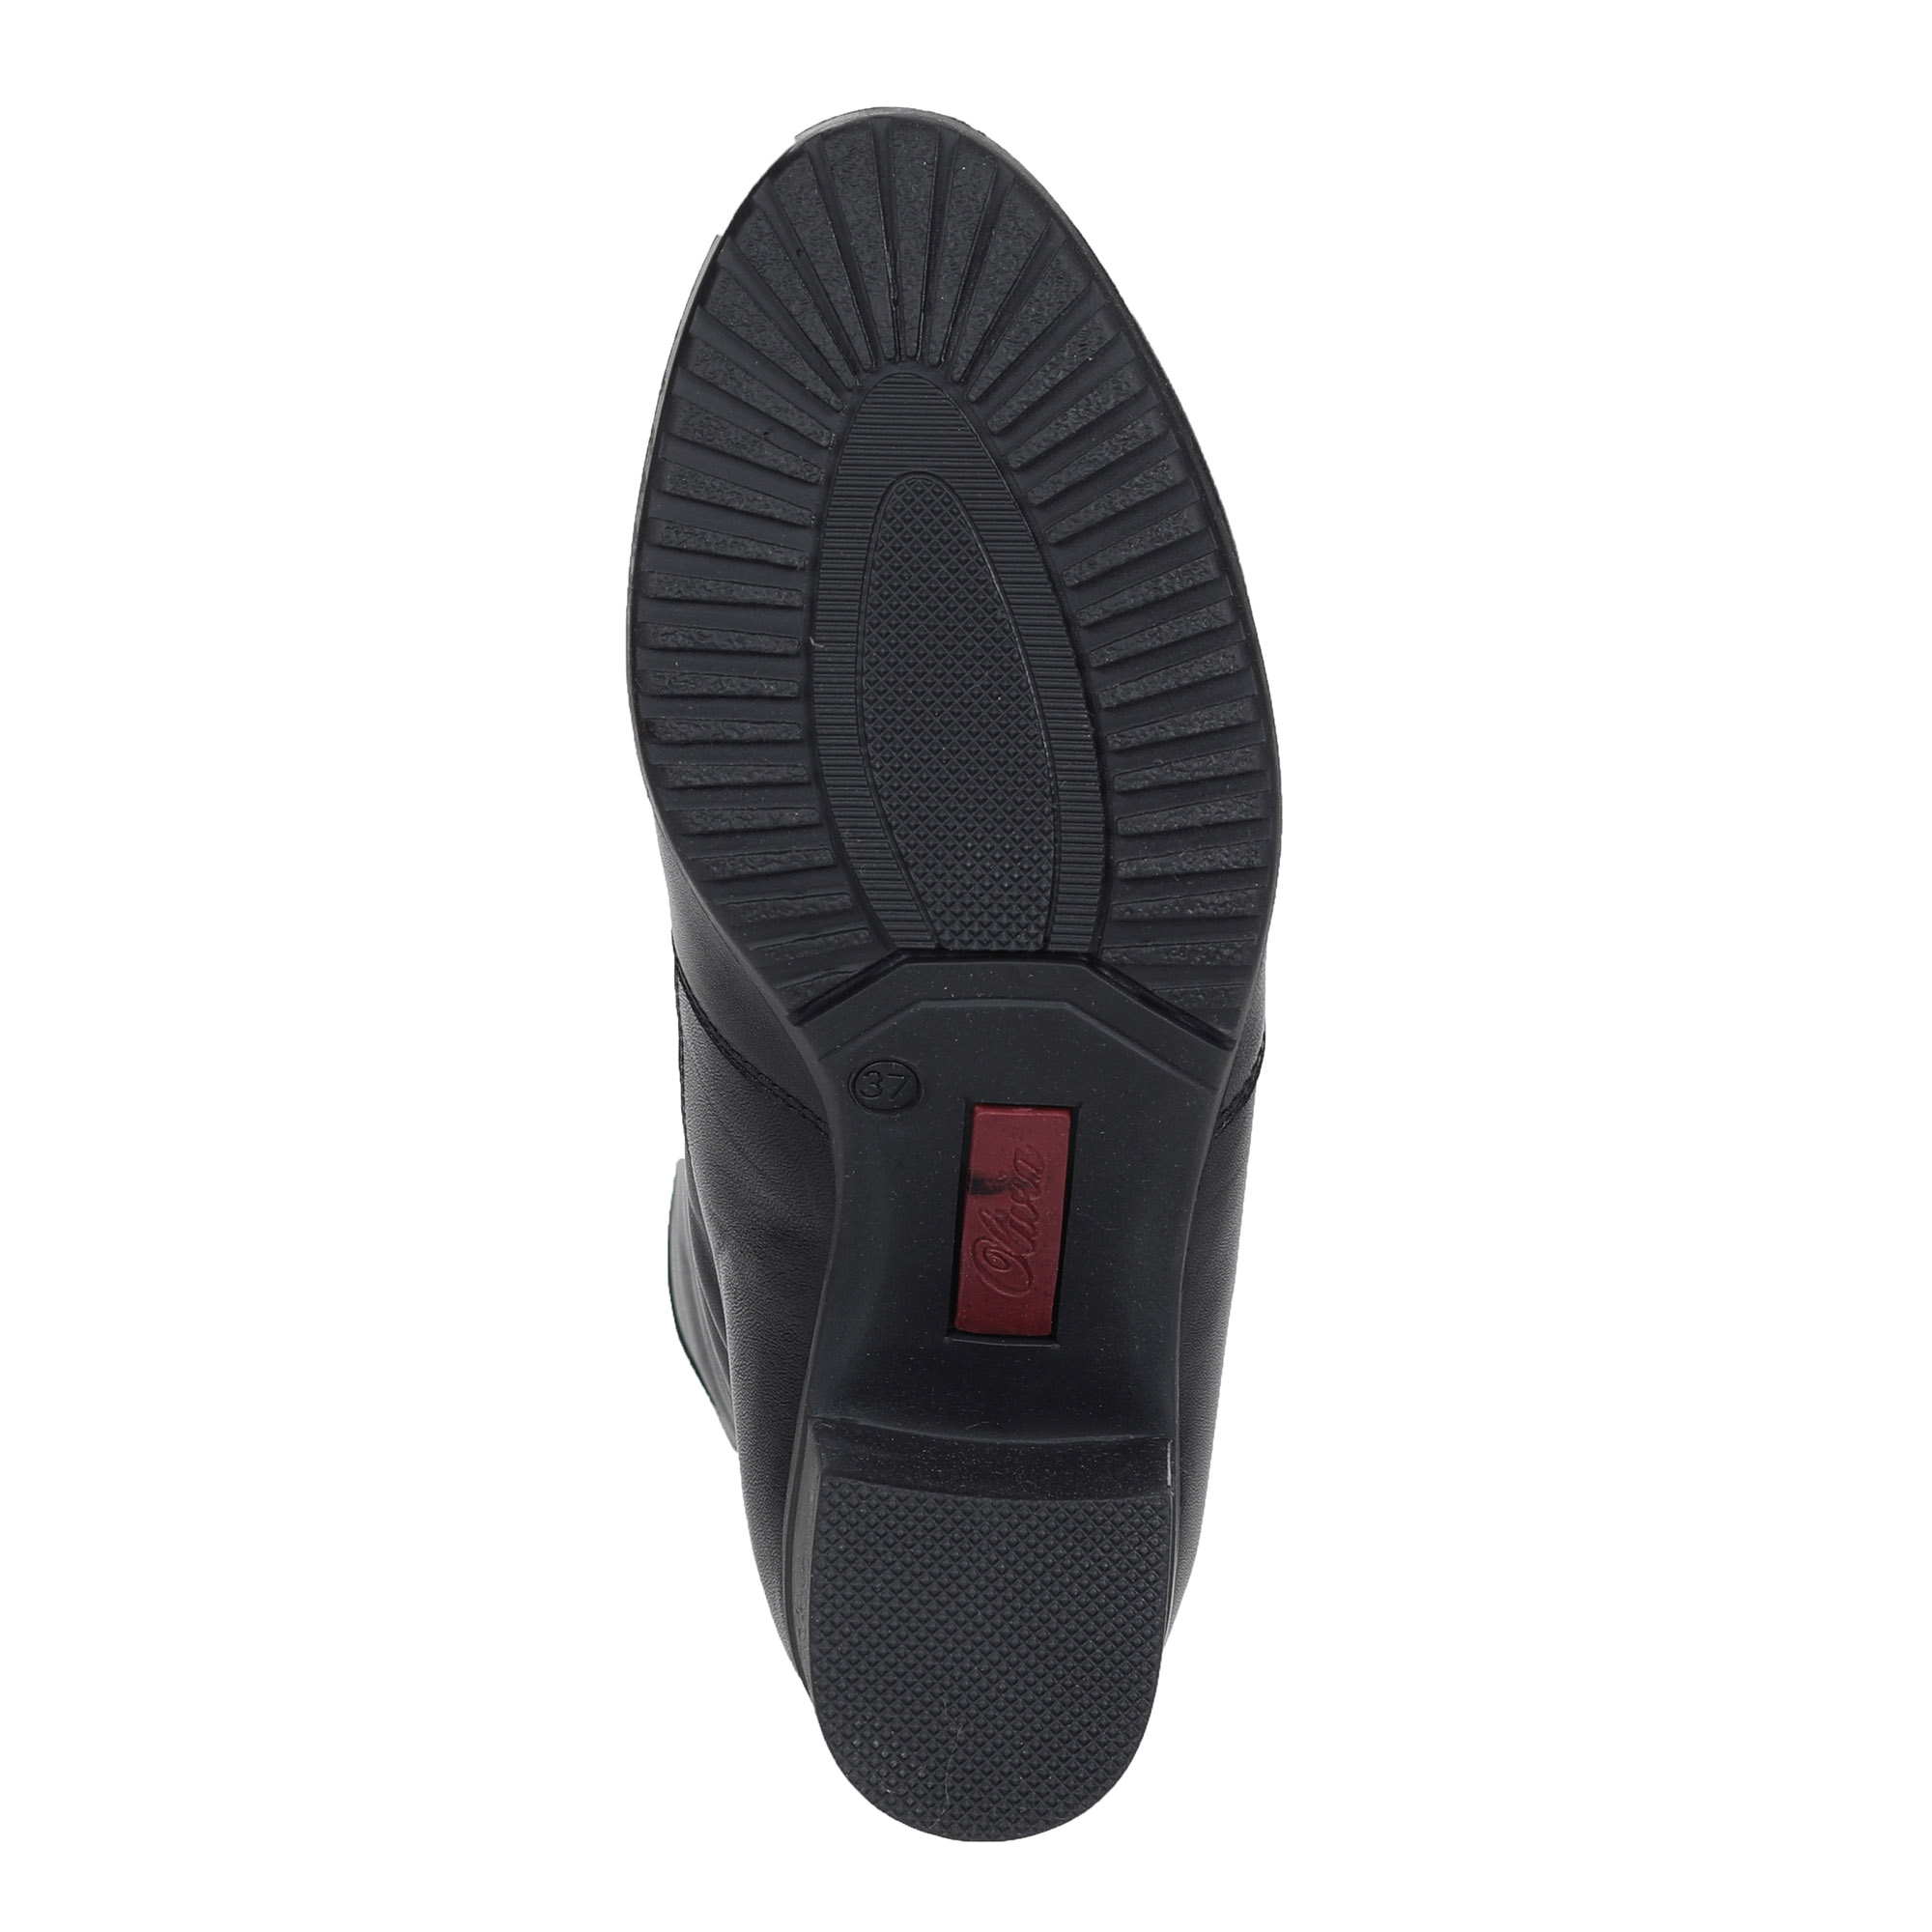 Черные сапоги из кожи на подкладке из натурального меха на устойчивом каблуке Olivia, размер 39, цвет черный - фото 7